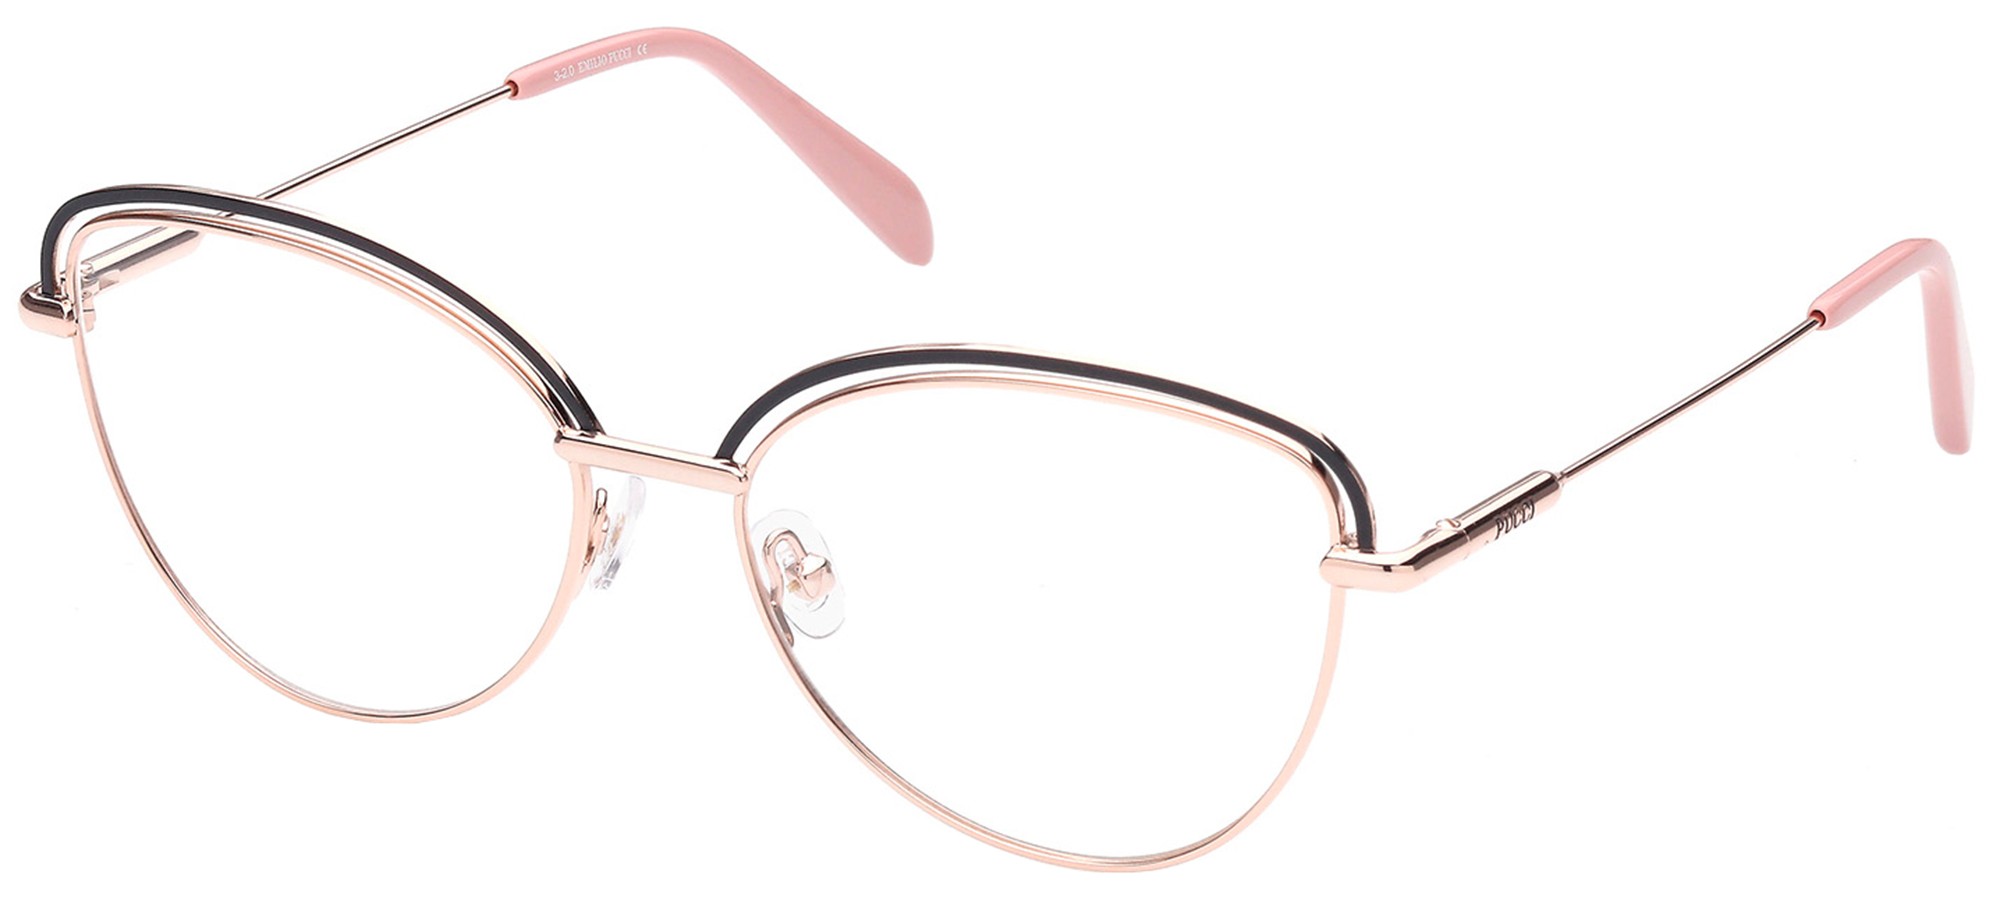 Emilio Pucci 5170 005 - Oculos de Grau